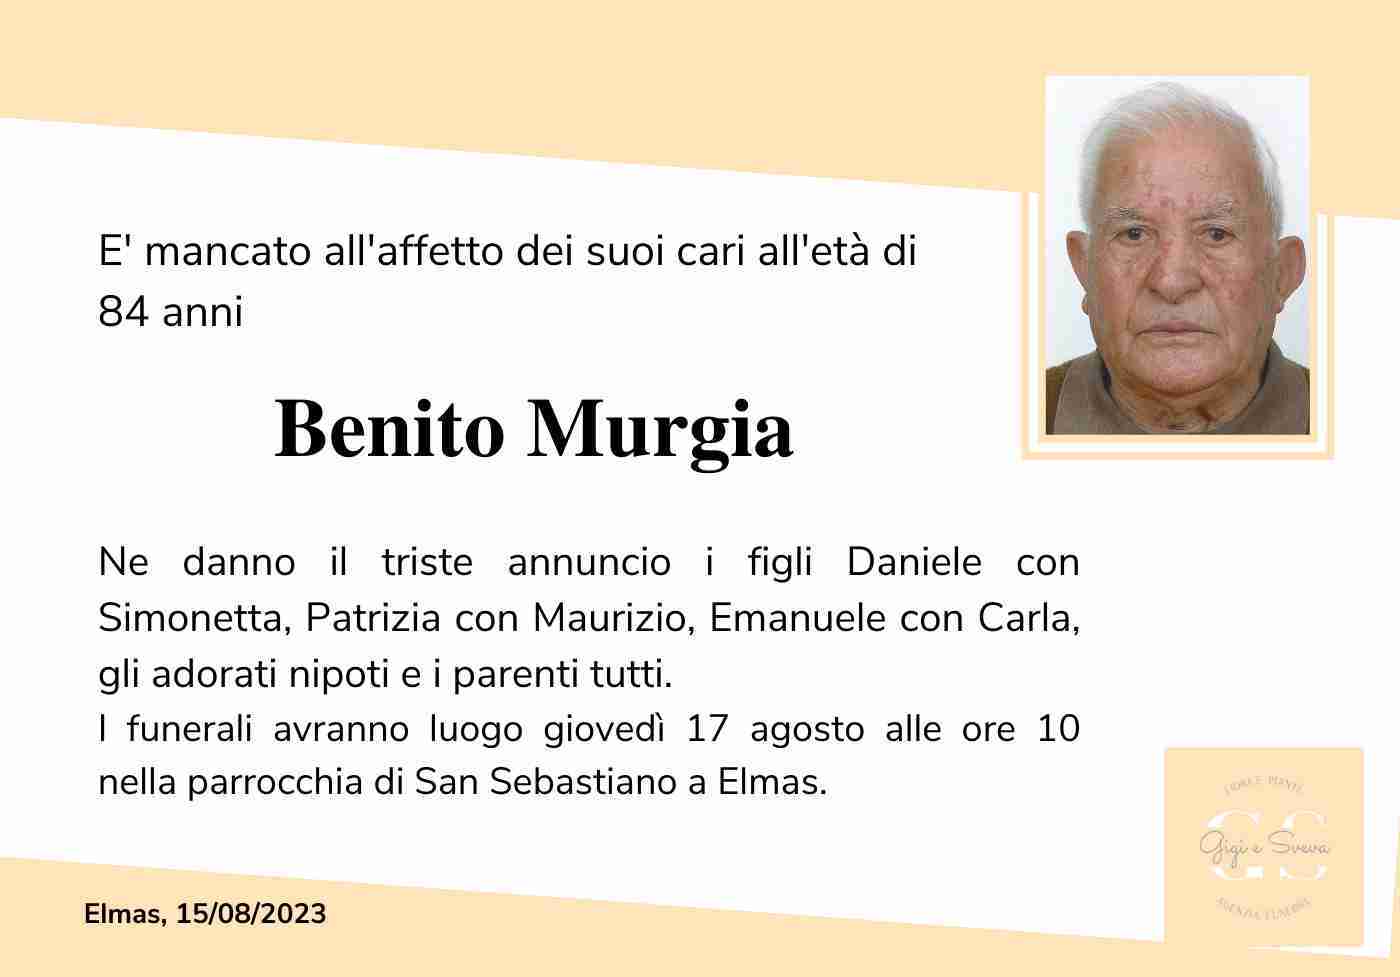 Benito Murgia